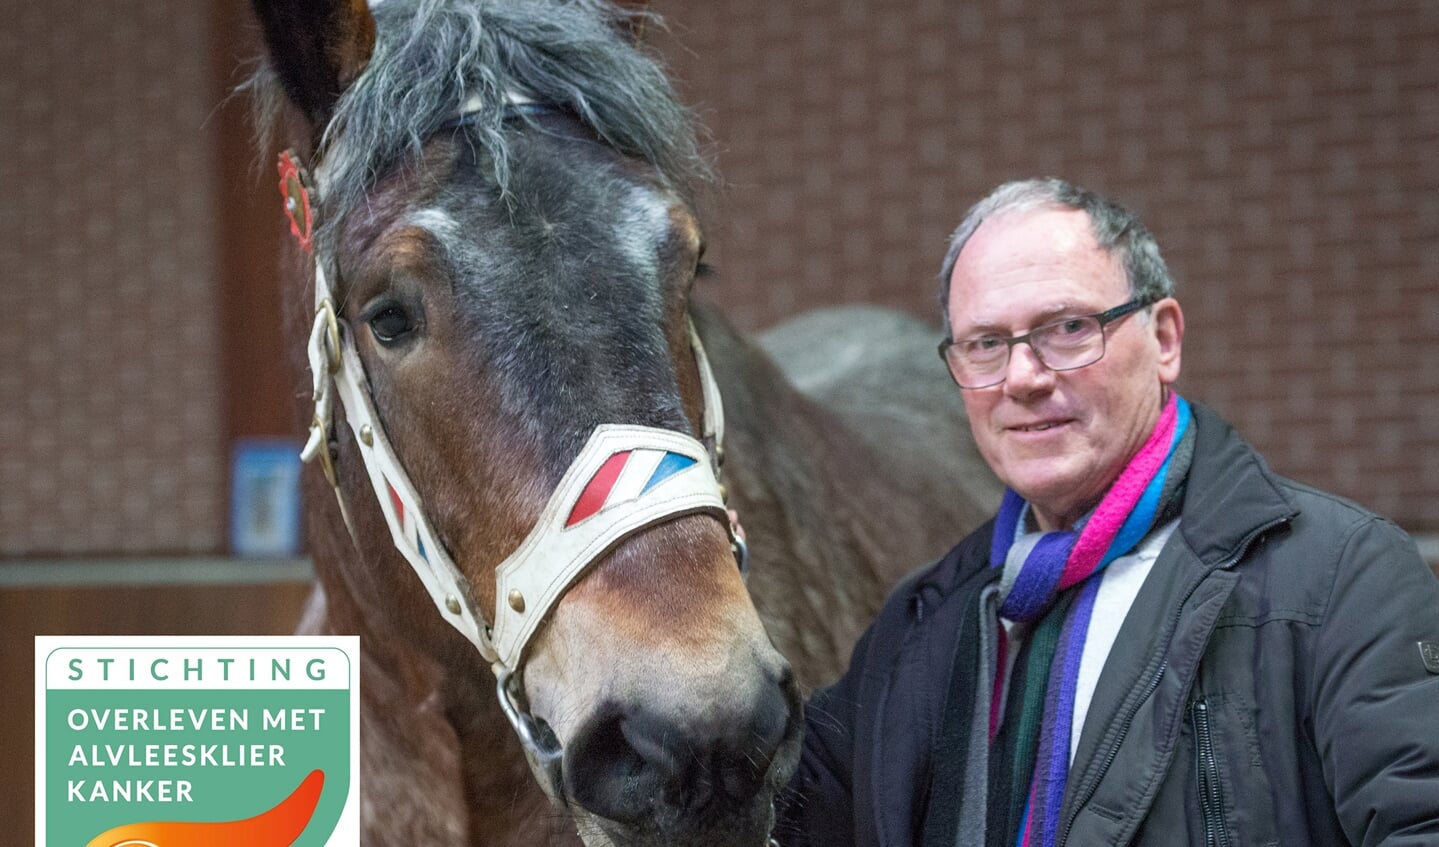 Wim van Lankveld met een van de paarden.